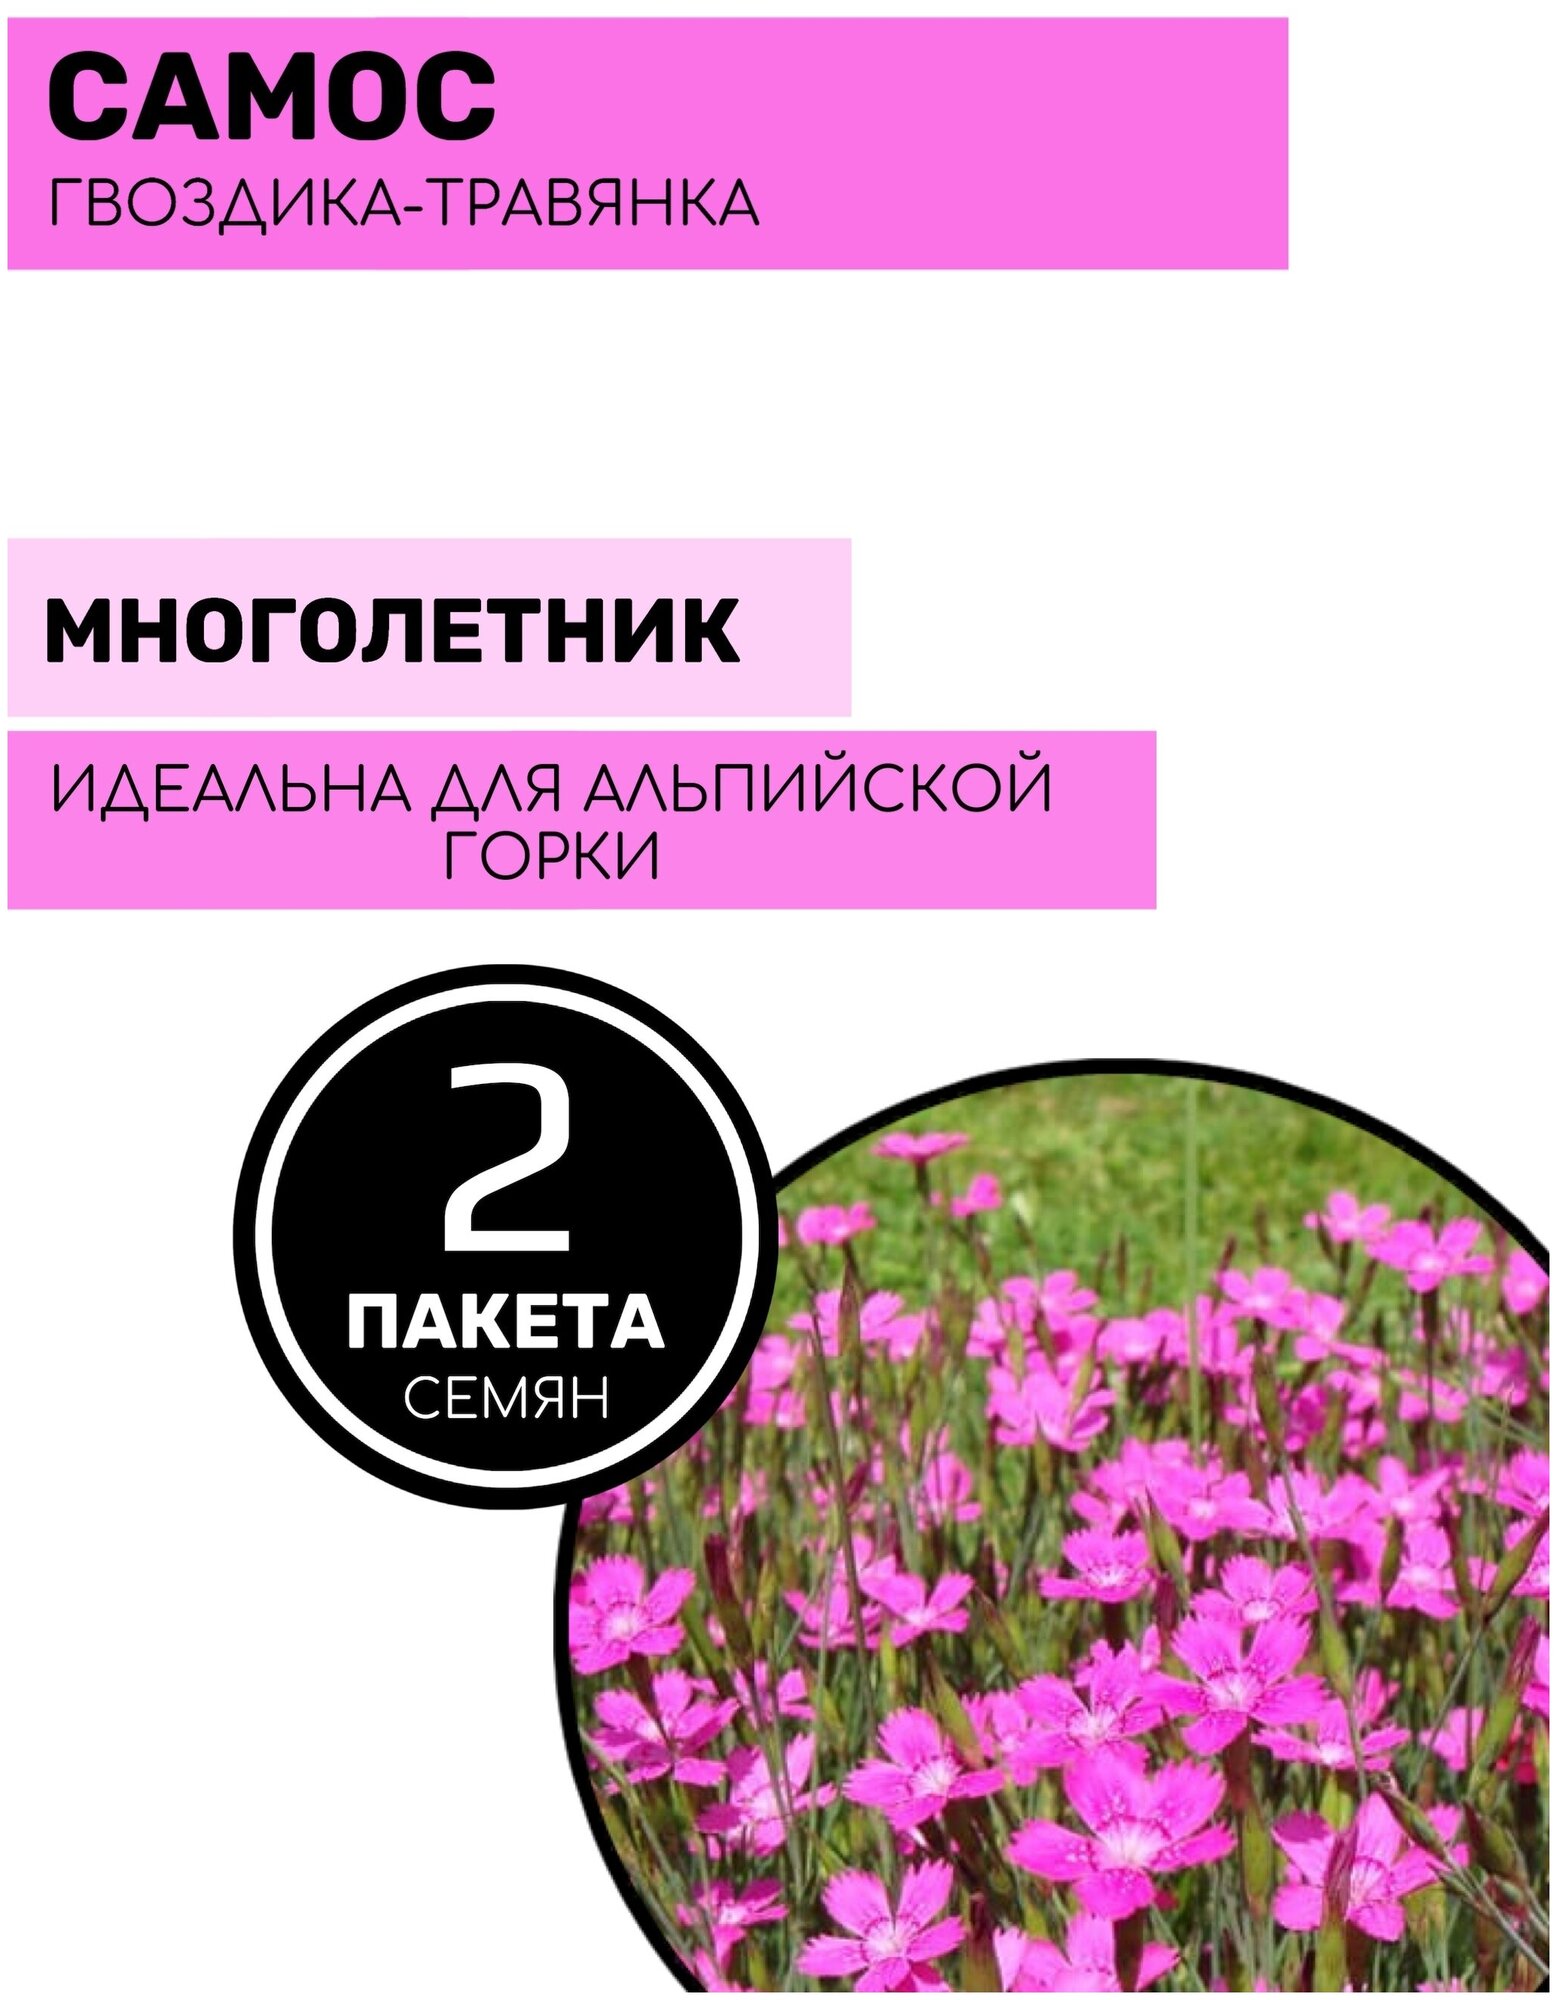 Цветы Гвоздика - травянка Самос 2 пакета по 005г семян